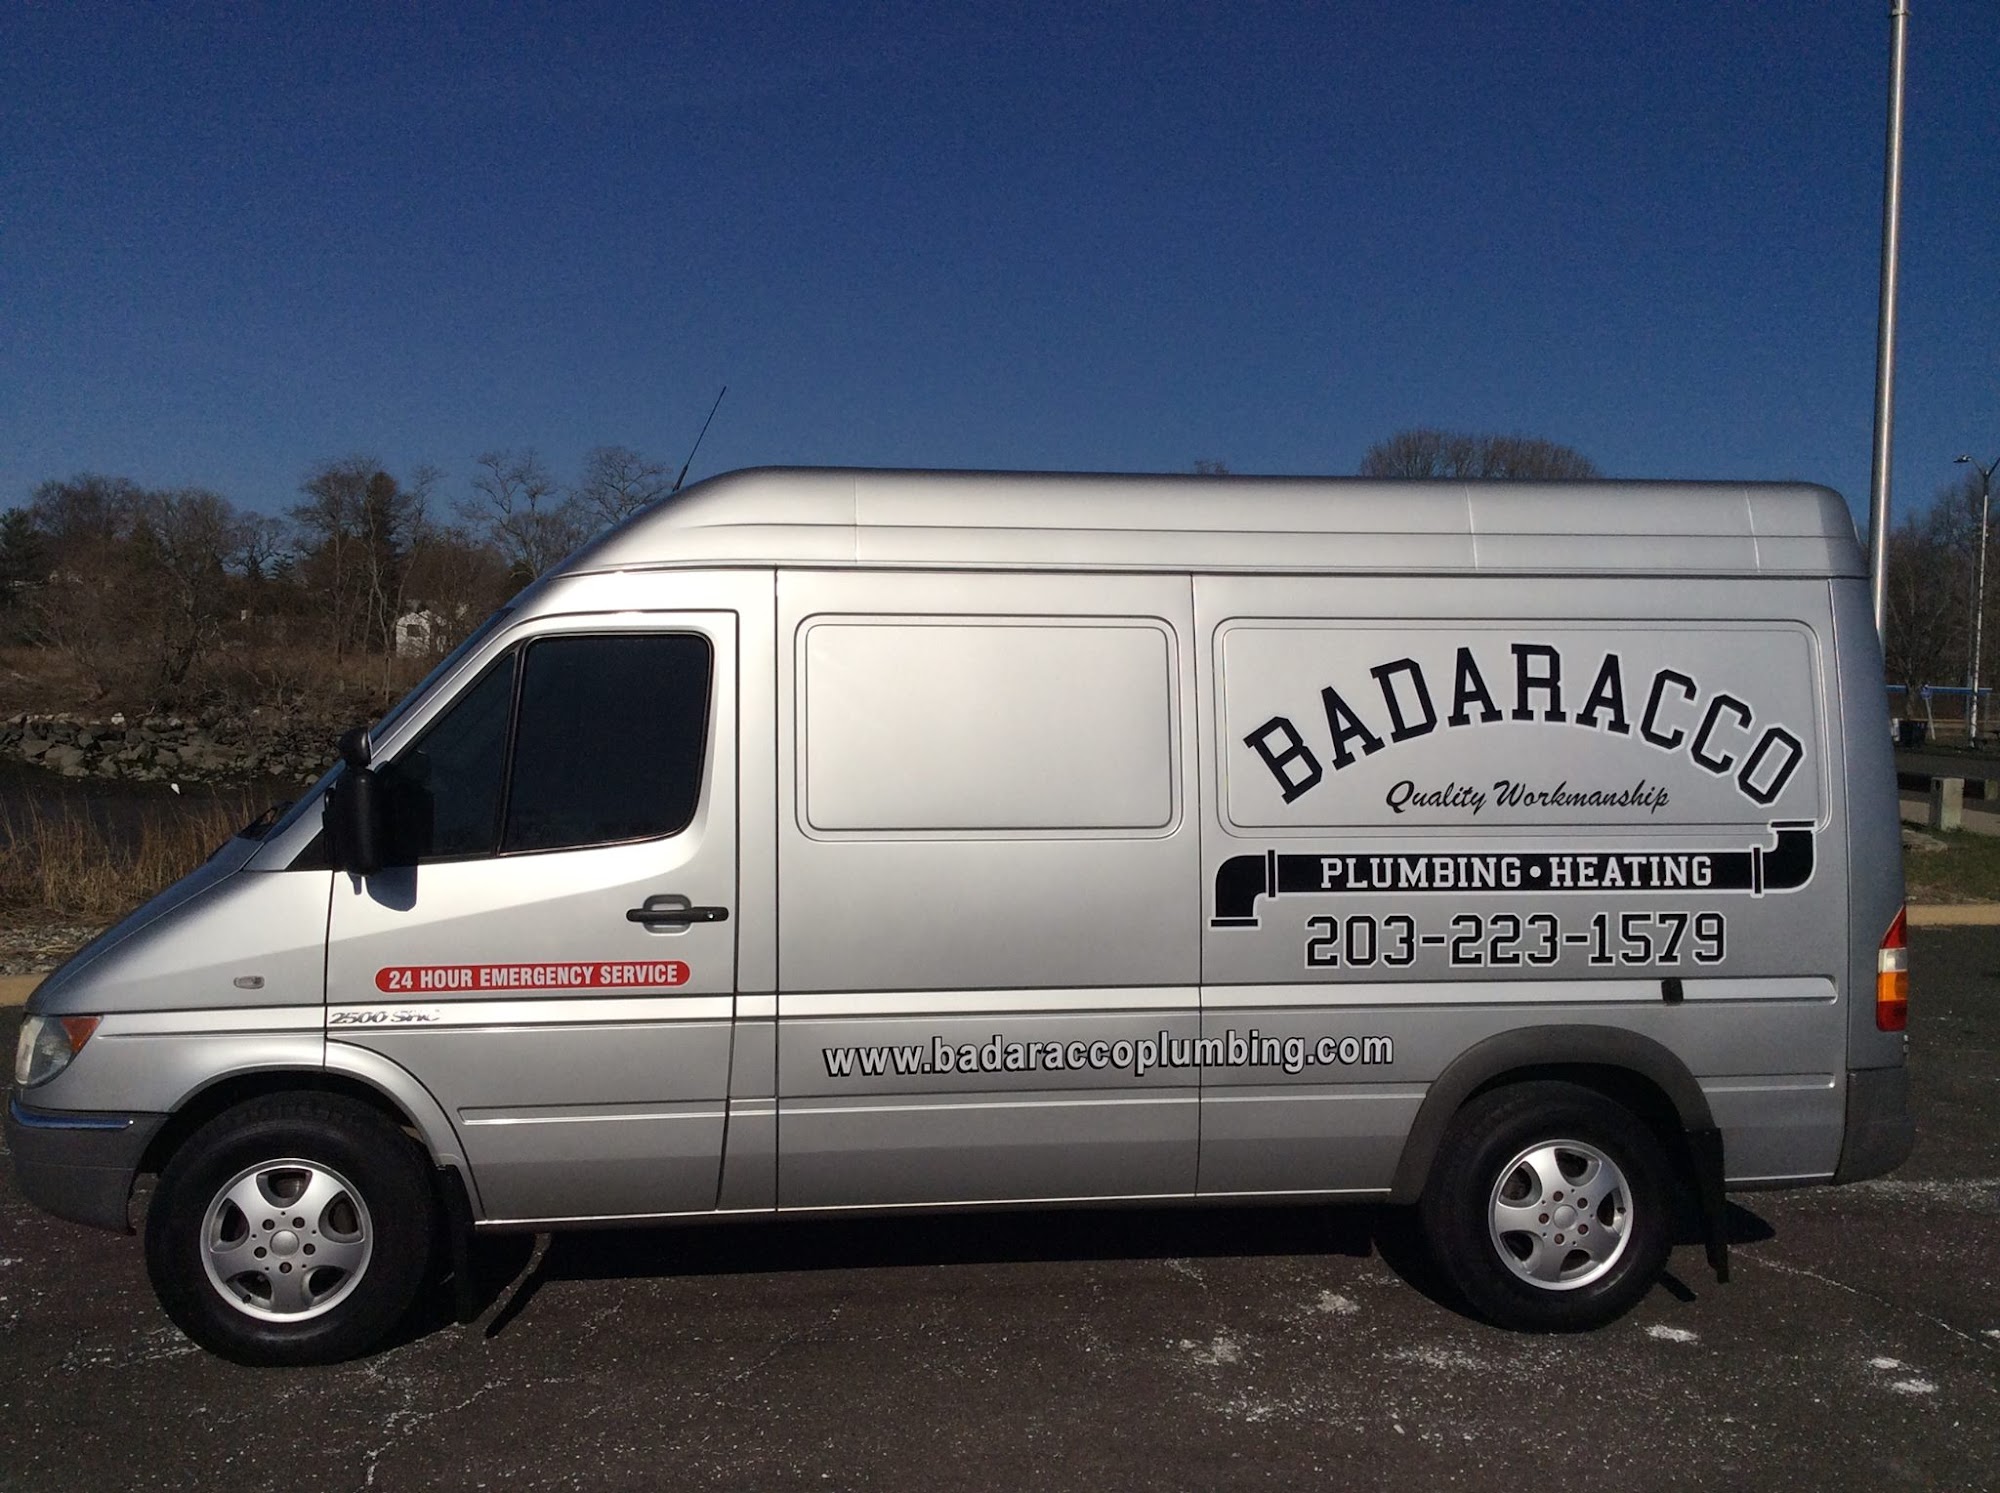 Badaracco Plumbing & Heating LLC